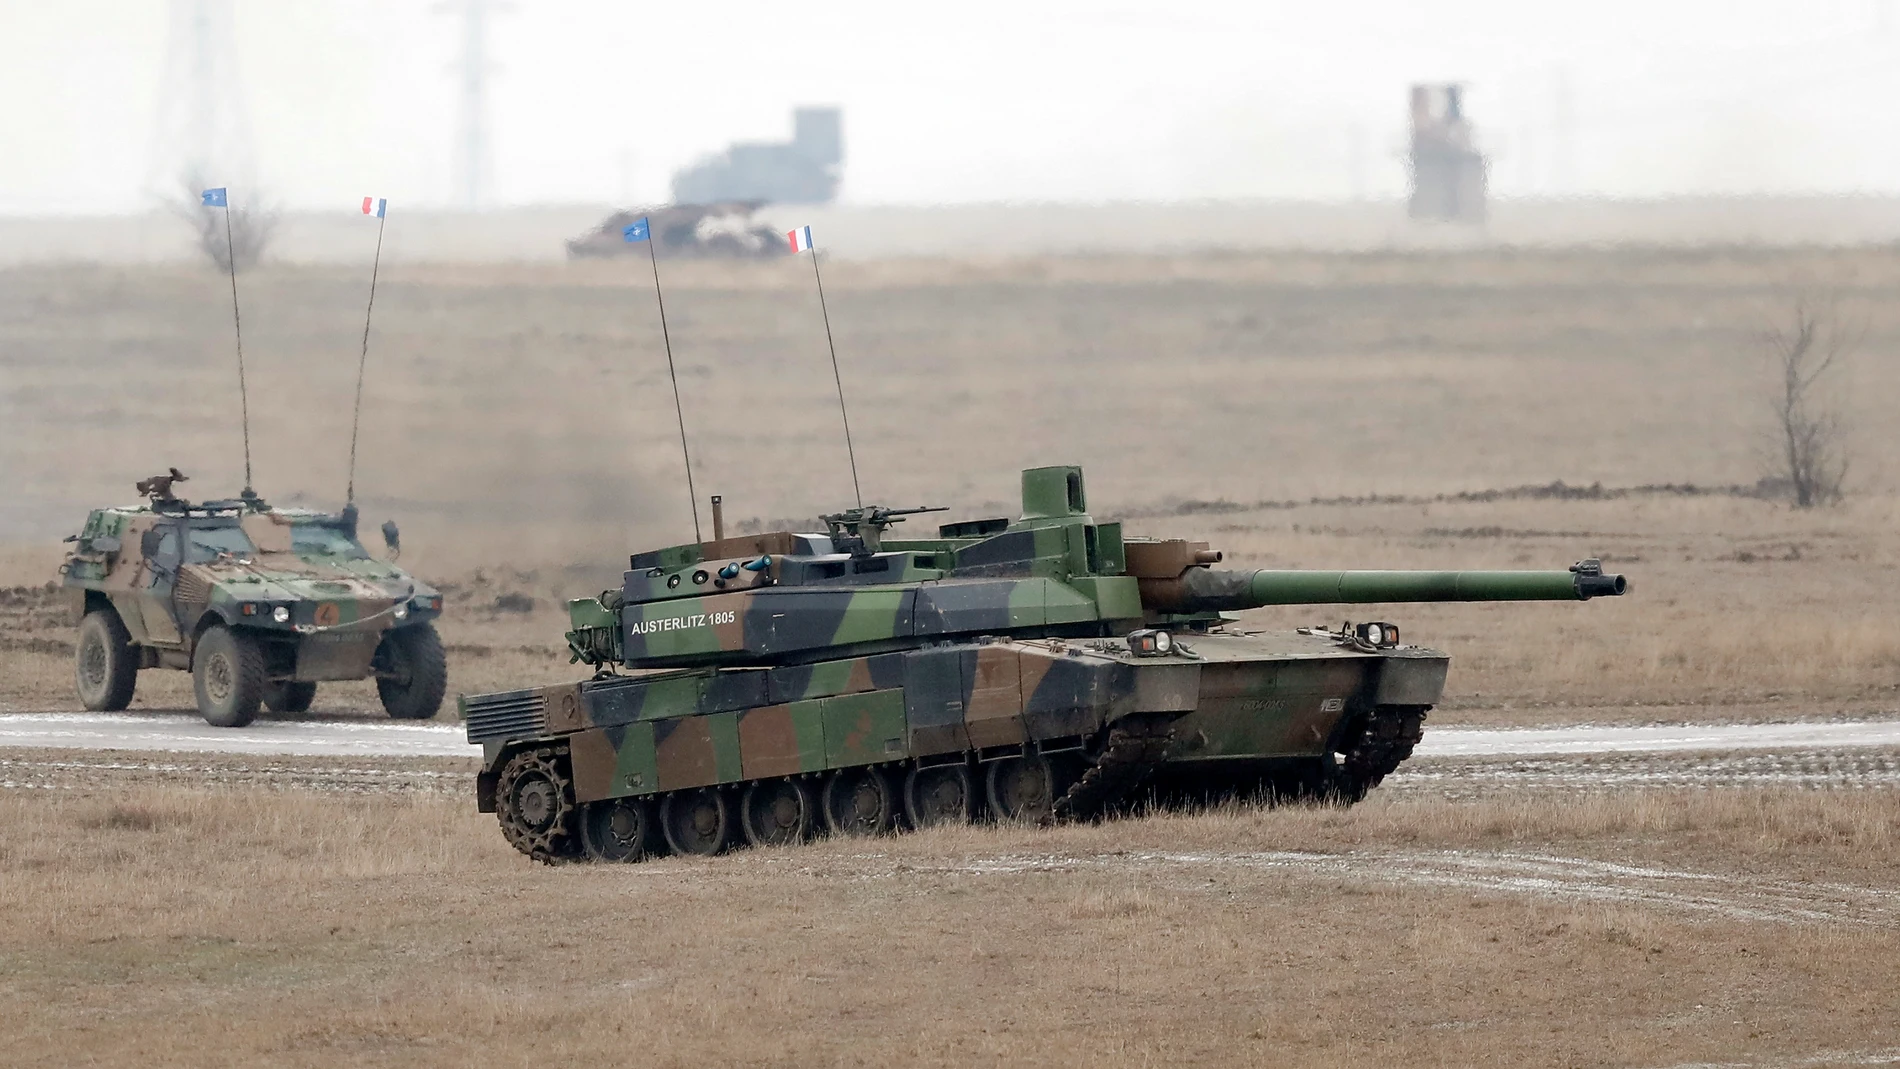 Un carro de combate francés AMX 56 Leclerc durante el ejercicio militar francés 'Eagle Meda 23' celebrado en el campo de tiro de Smardan, a 230 kilómetros al noreste de Bucarest, Rumanía